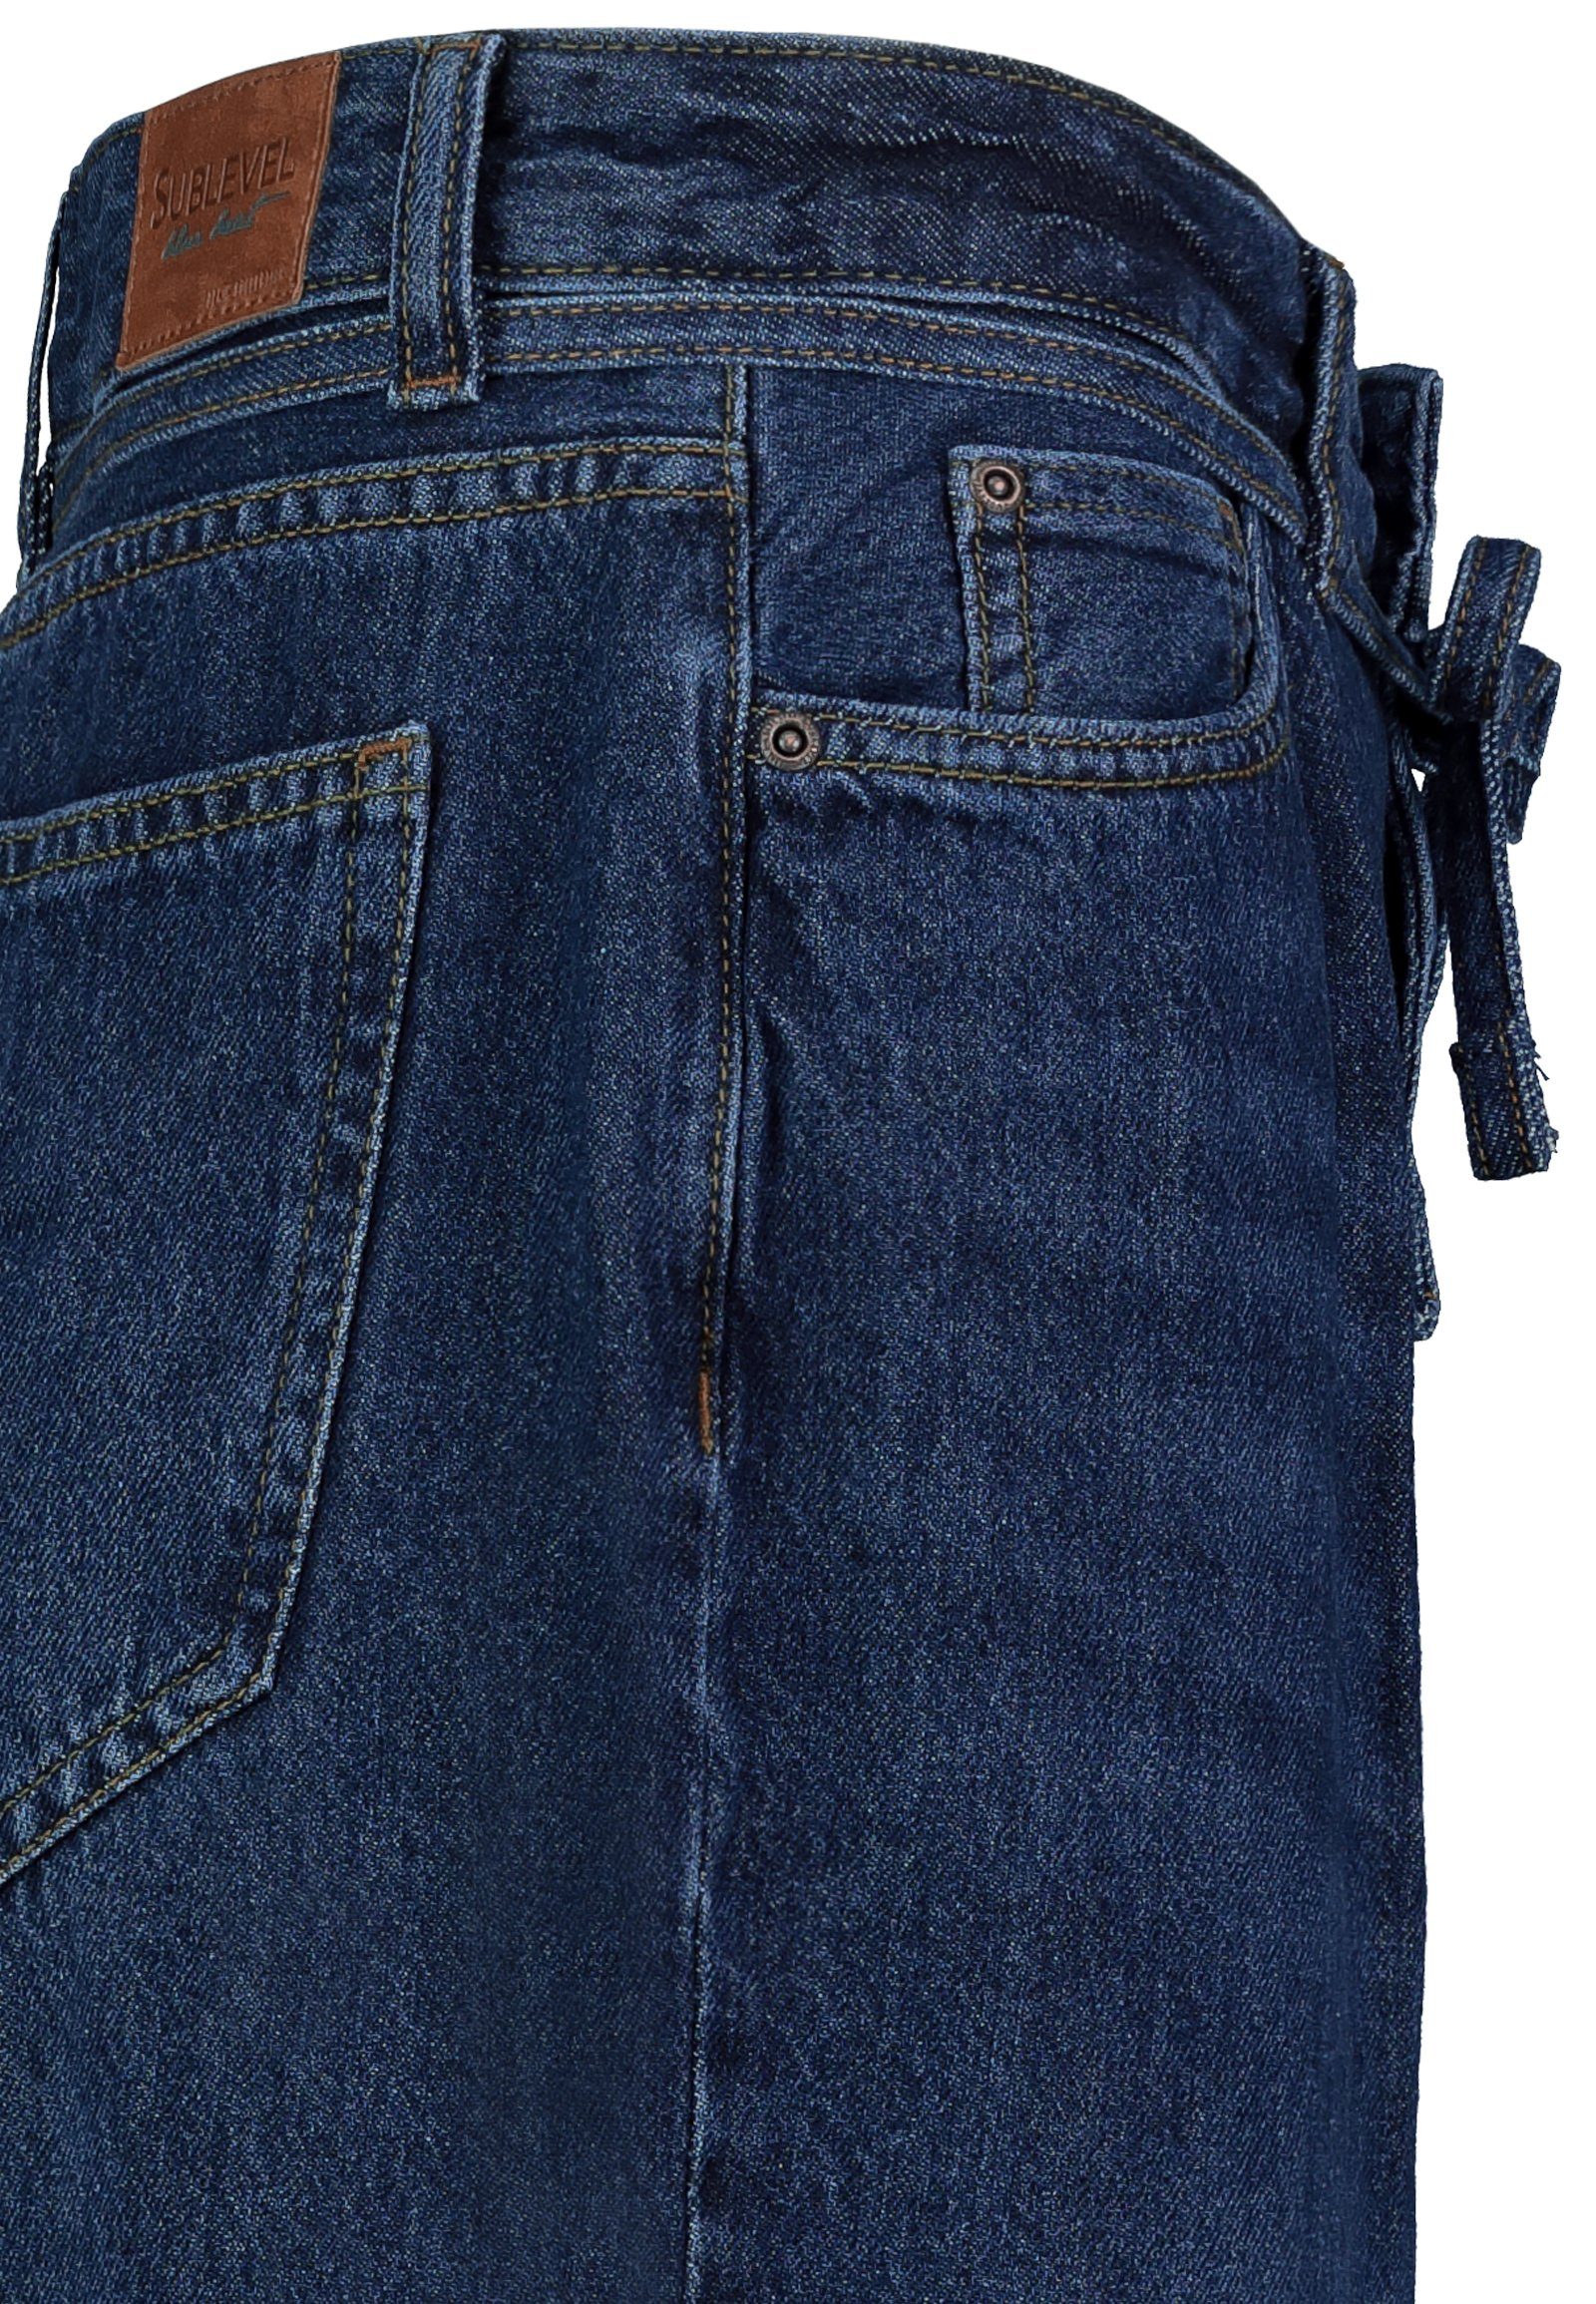 SUBLEVEL Loose-fit-Jeans Jeans Barrel-Fit dark-blue